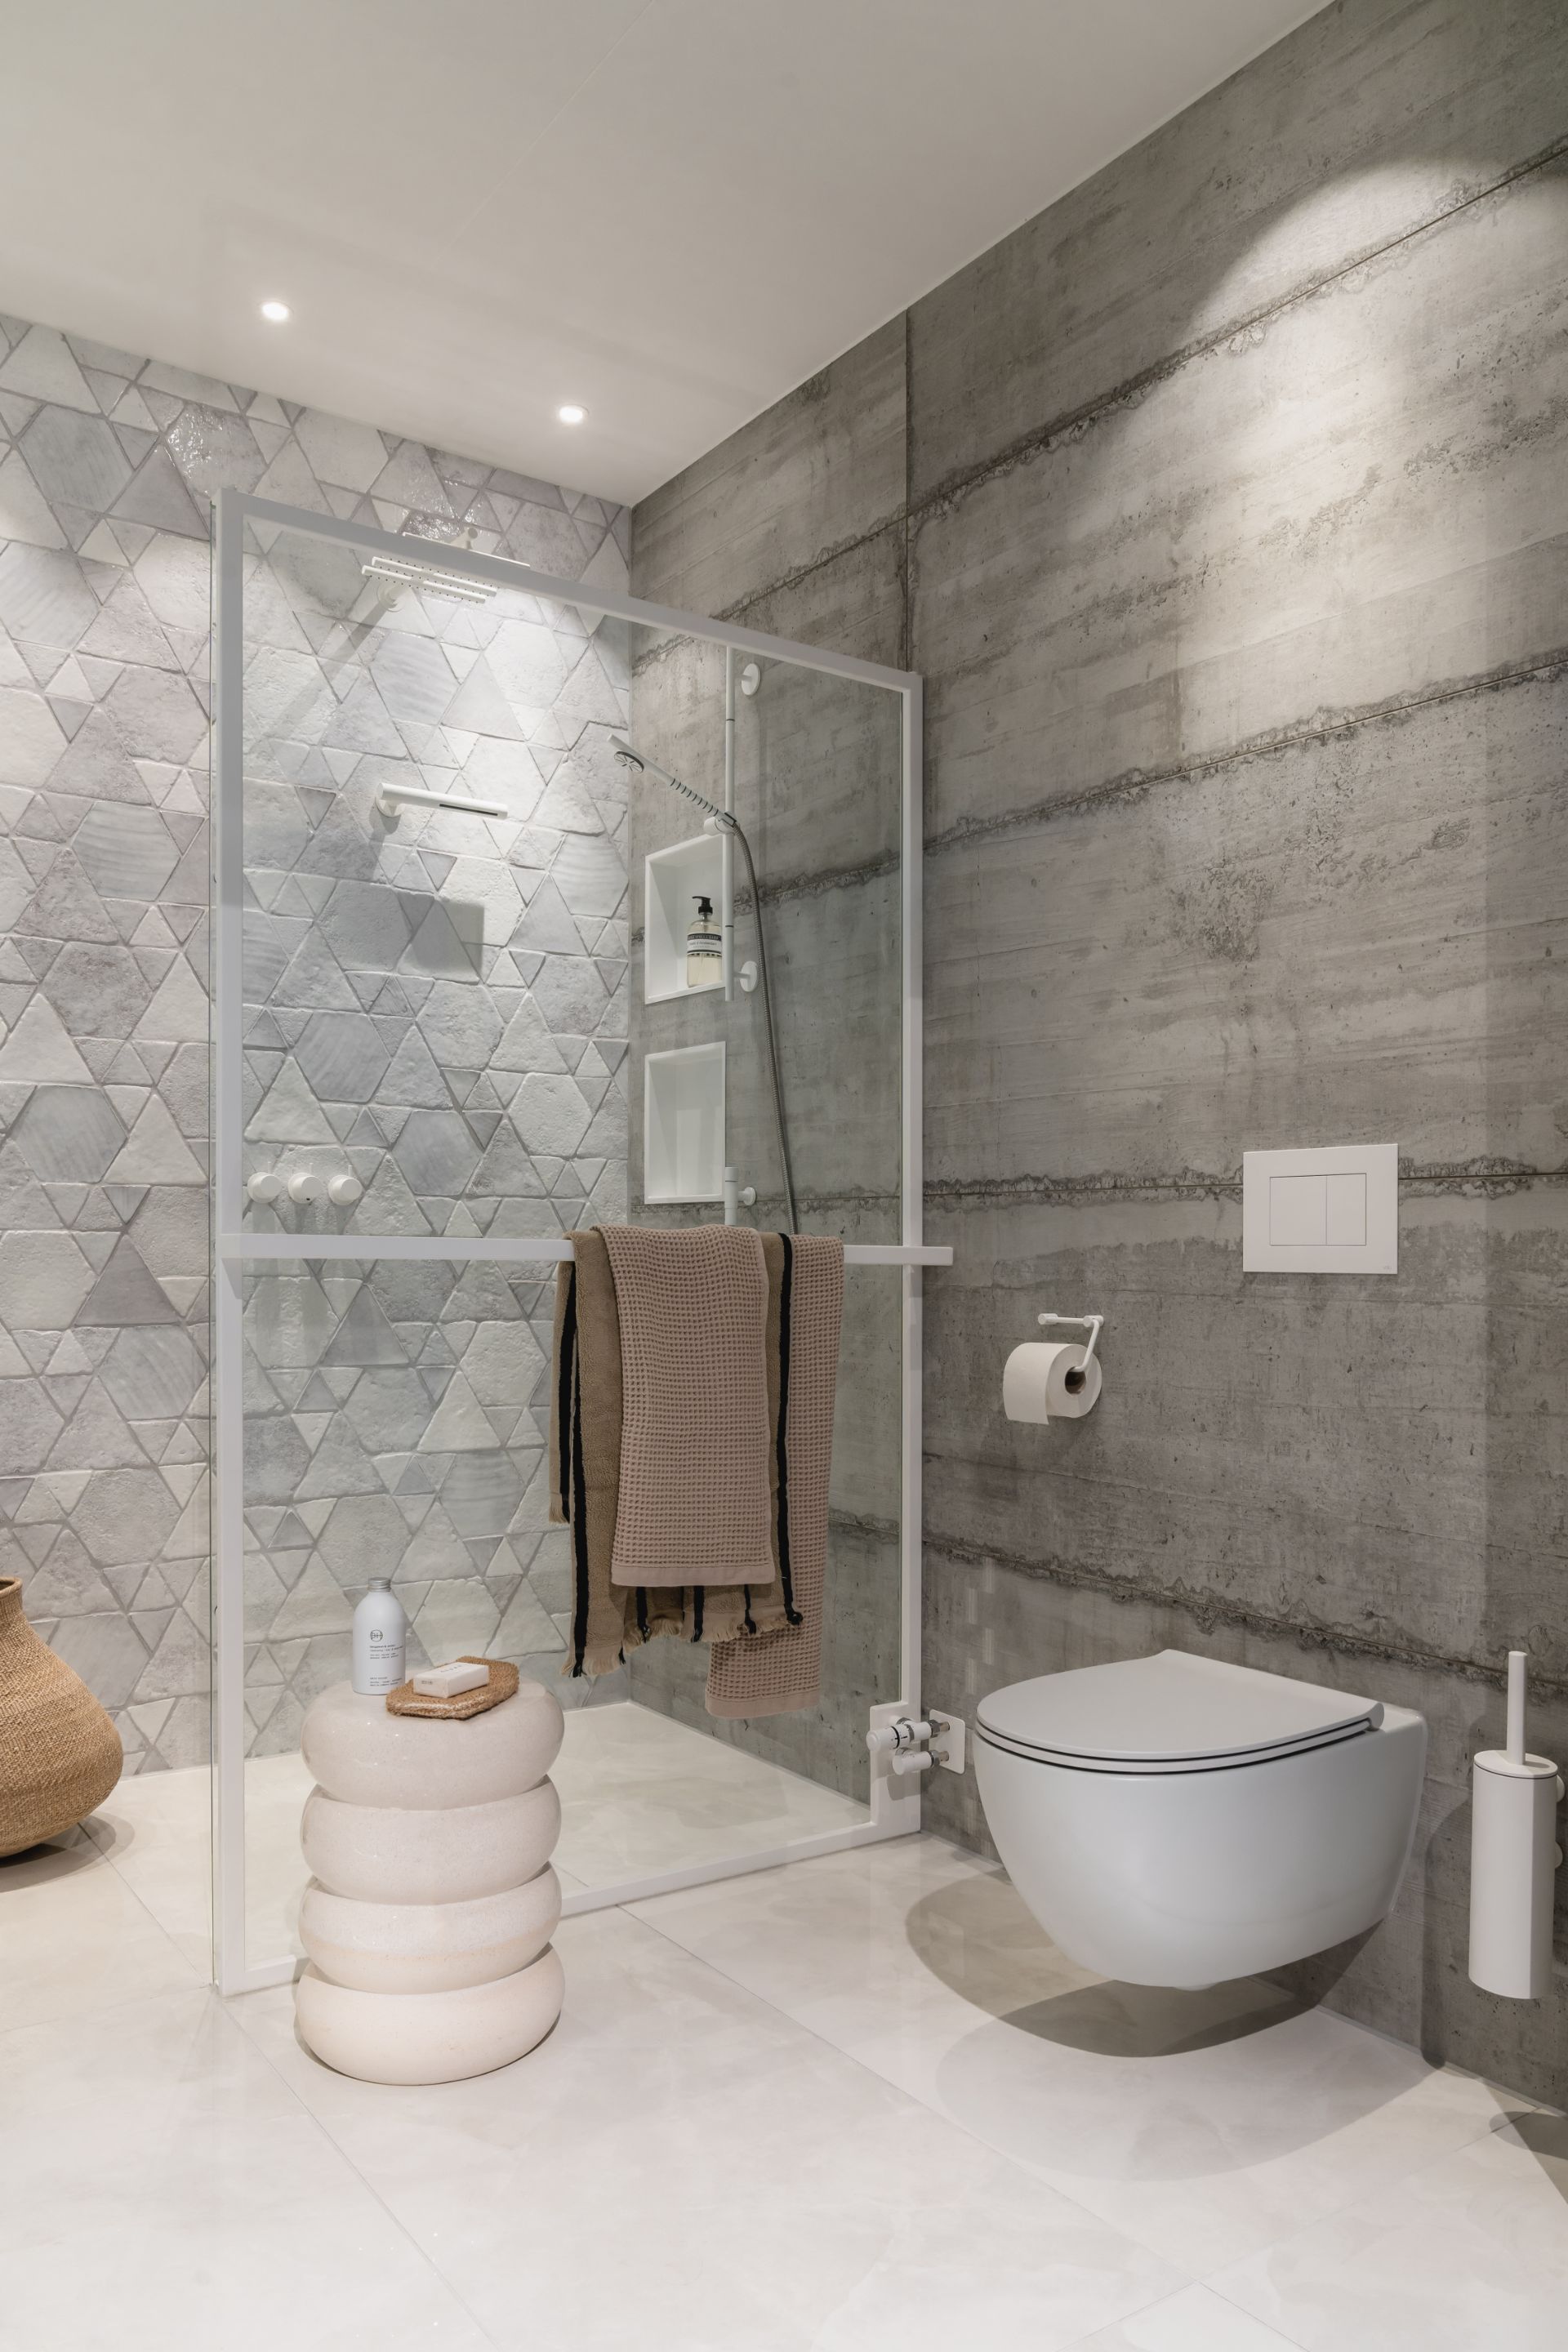 Foto: ultieme witte badkamer met prachtige tegels   eerste kamer badkamers   008